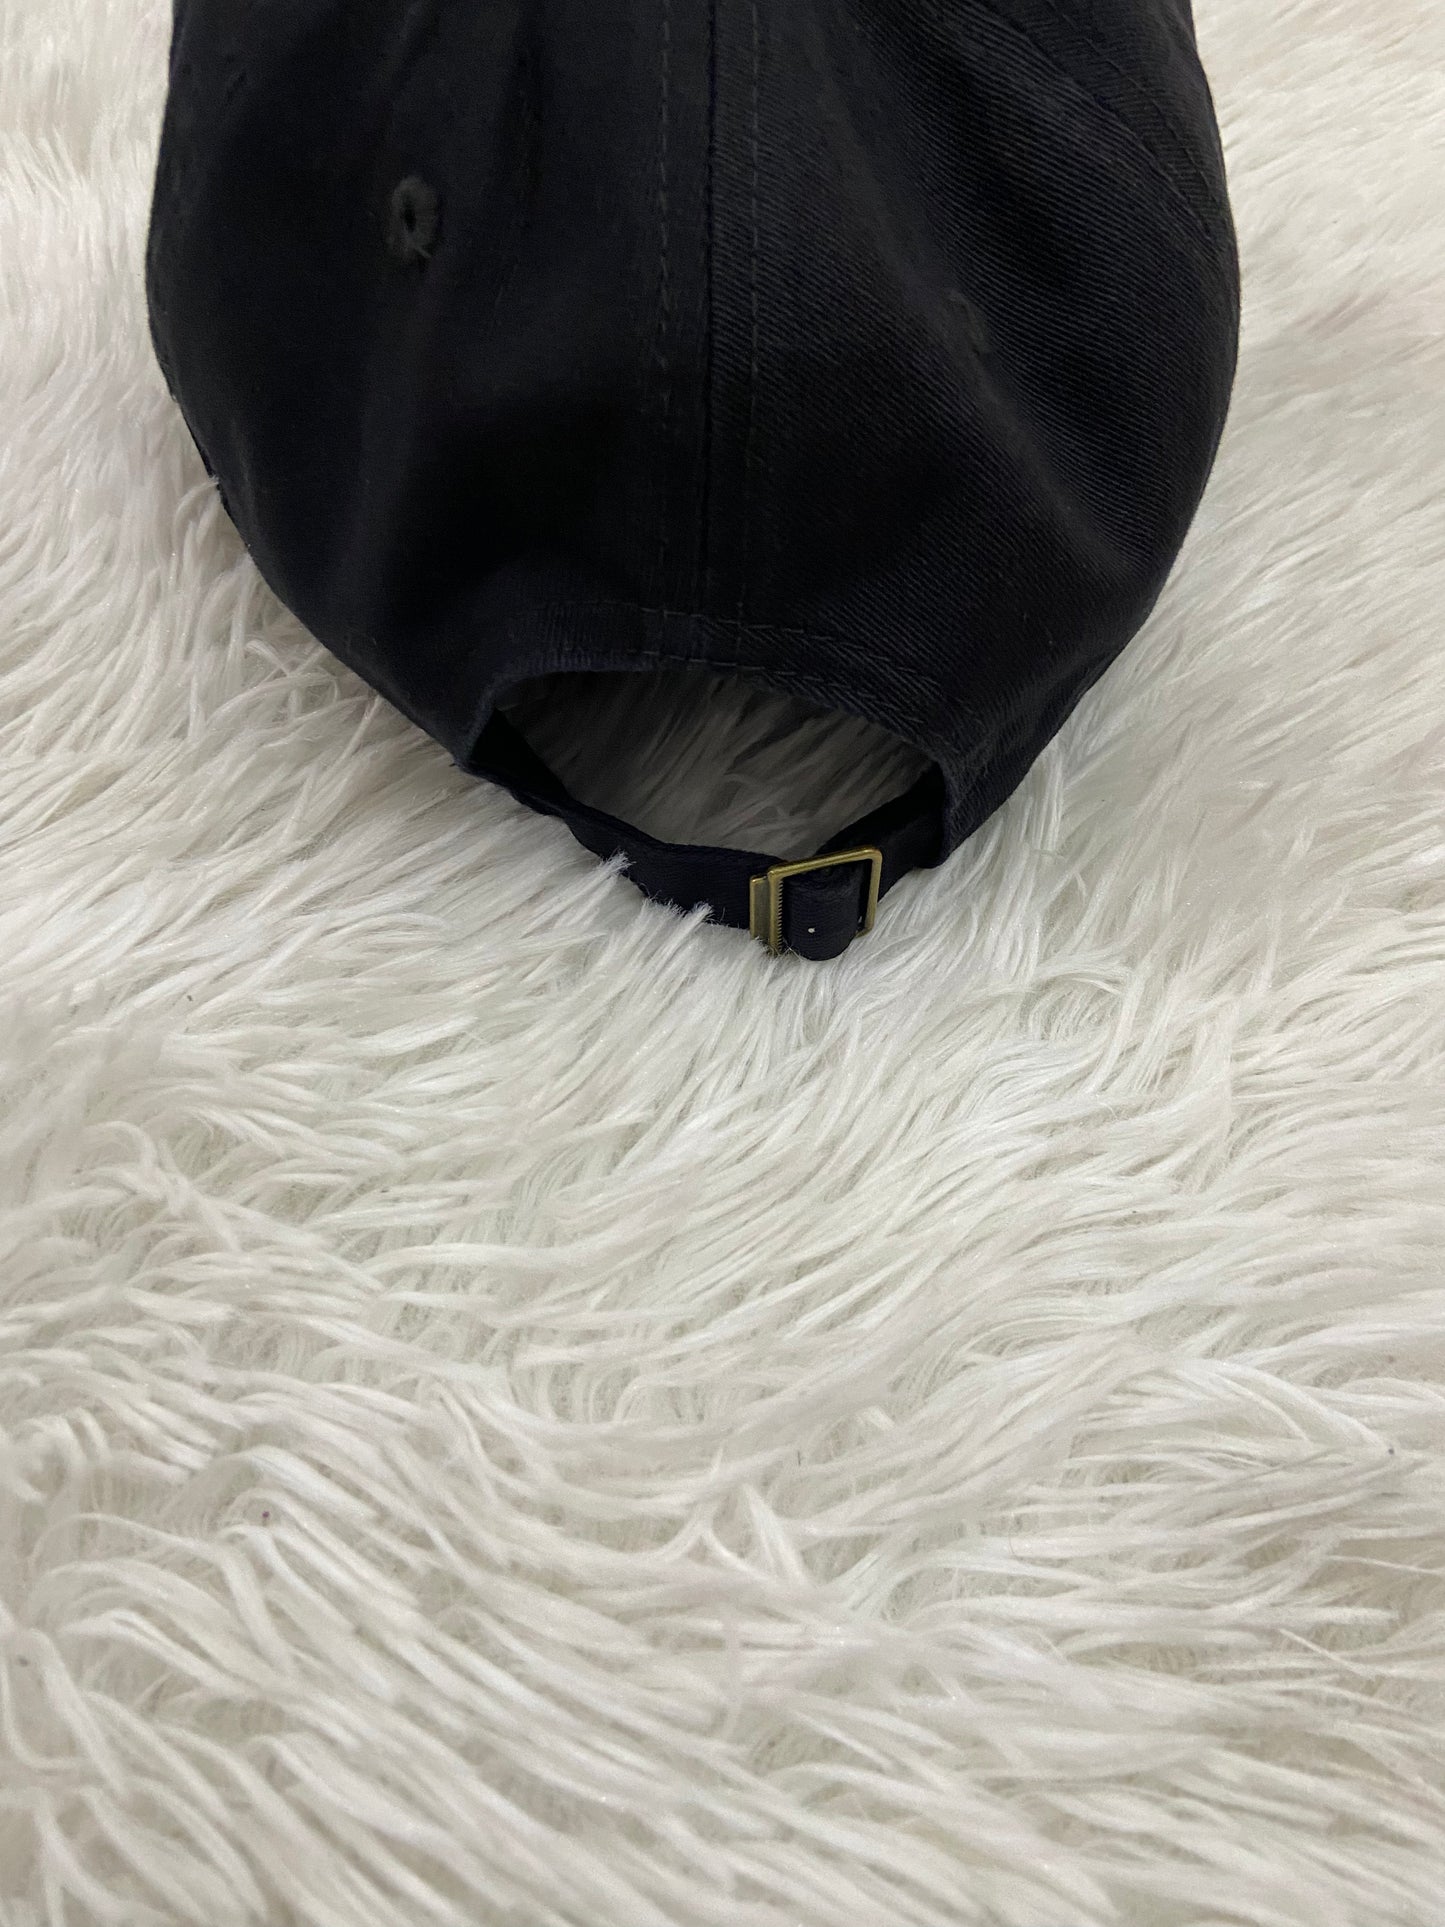 Gorra Fashion Nova original de color negro con diseño de letra BAD BITCH ( perra mala ) en color blanco en la parte del frente ajustable en la parte de atrás